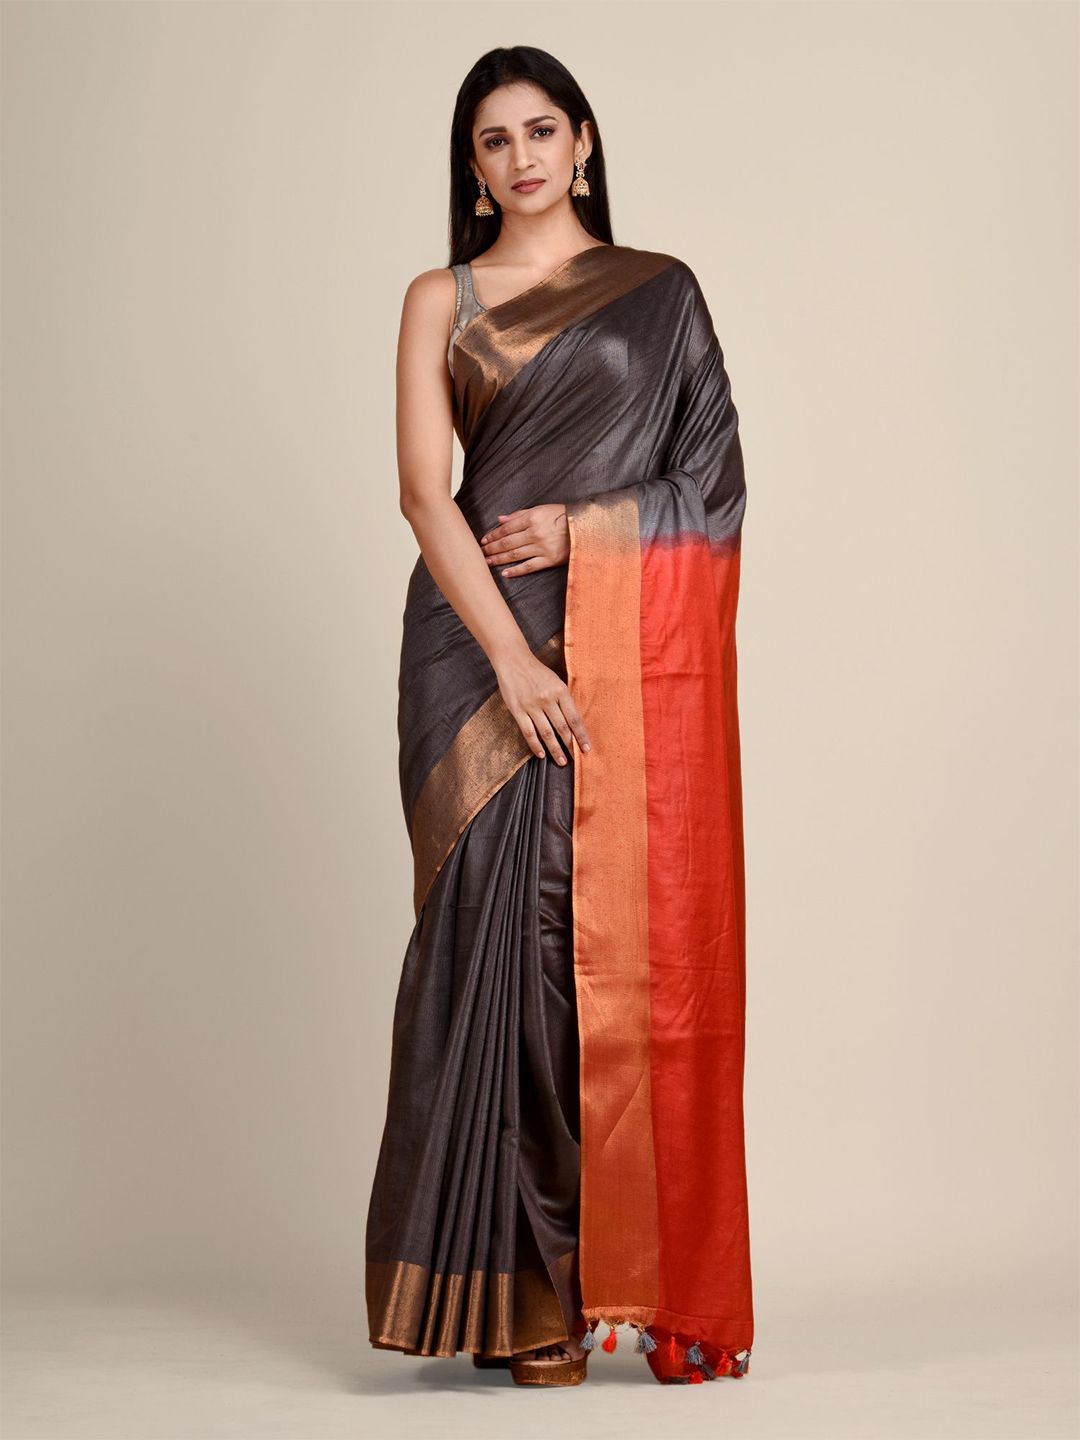 Arhi Black & Orange Solid Zari Saree Price in India